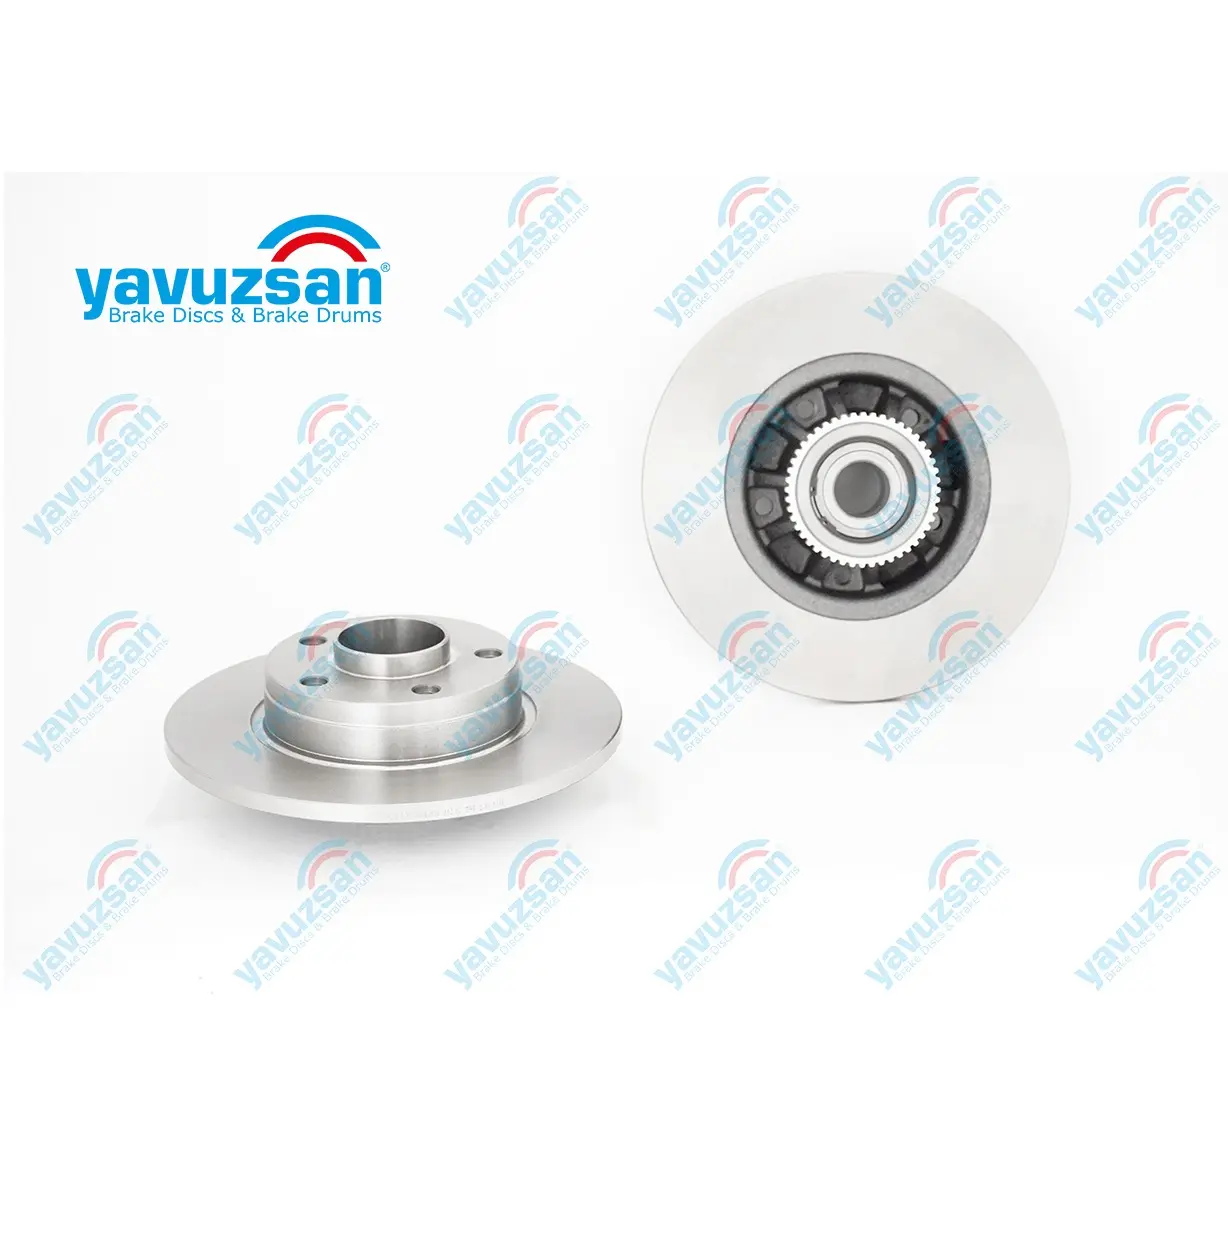 Yvz-30346/disco de freio de alta qualidade do oem/oes fornecedor para peugeot e opel nissan e renault